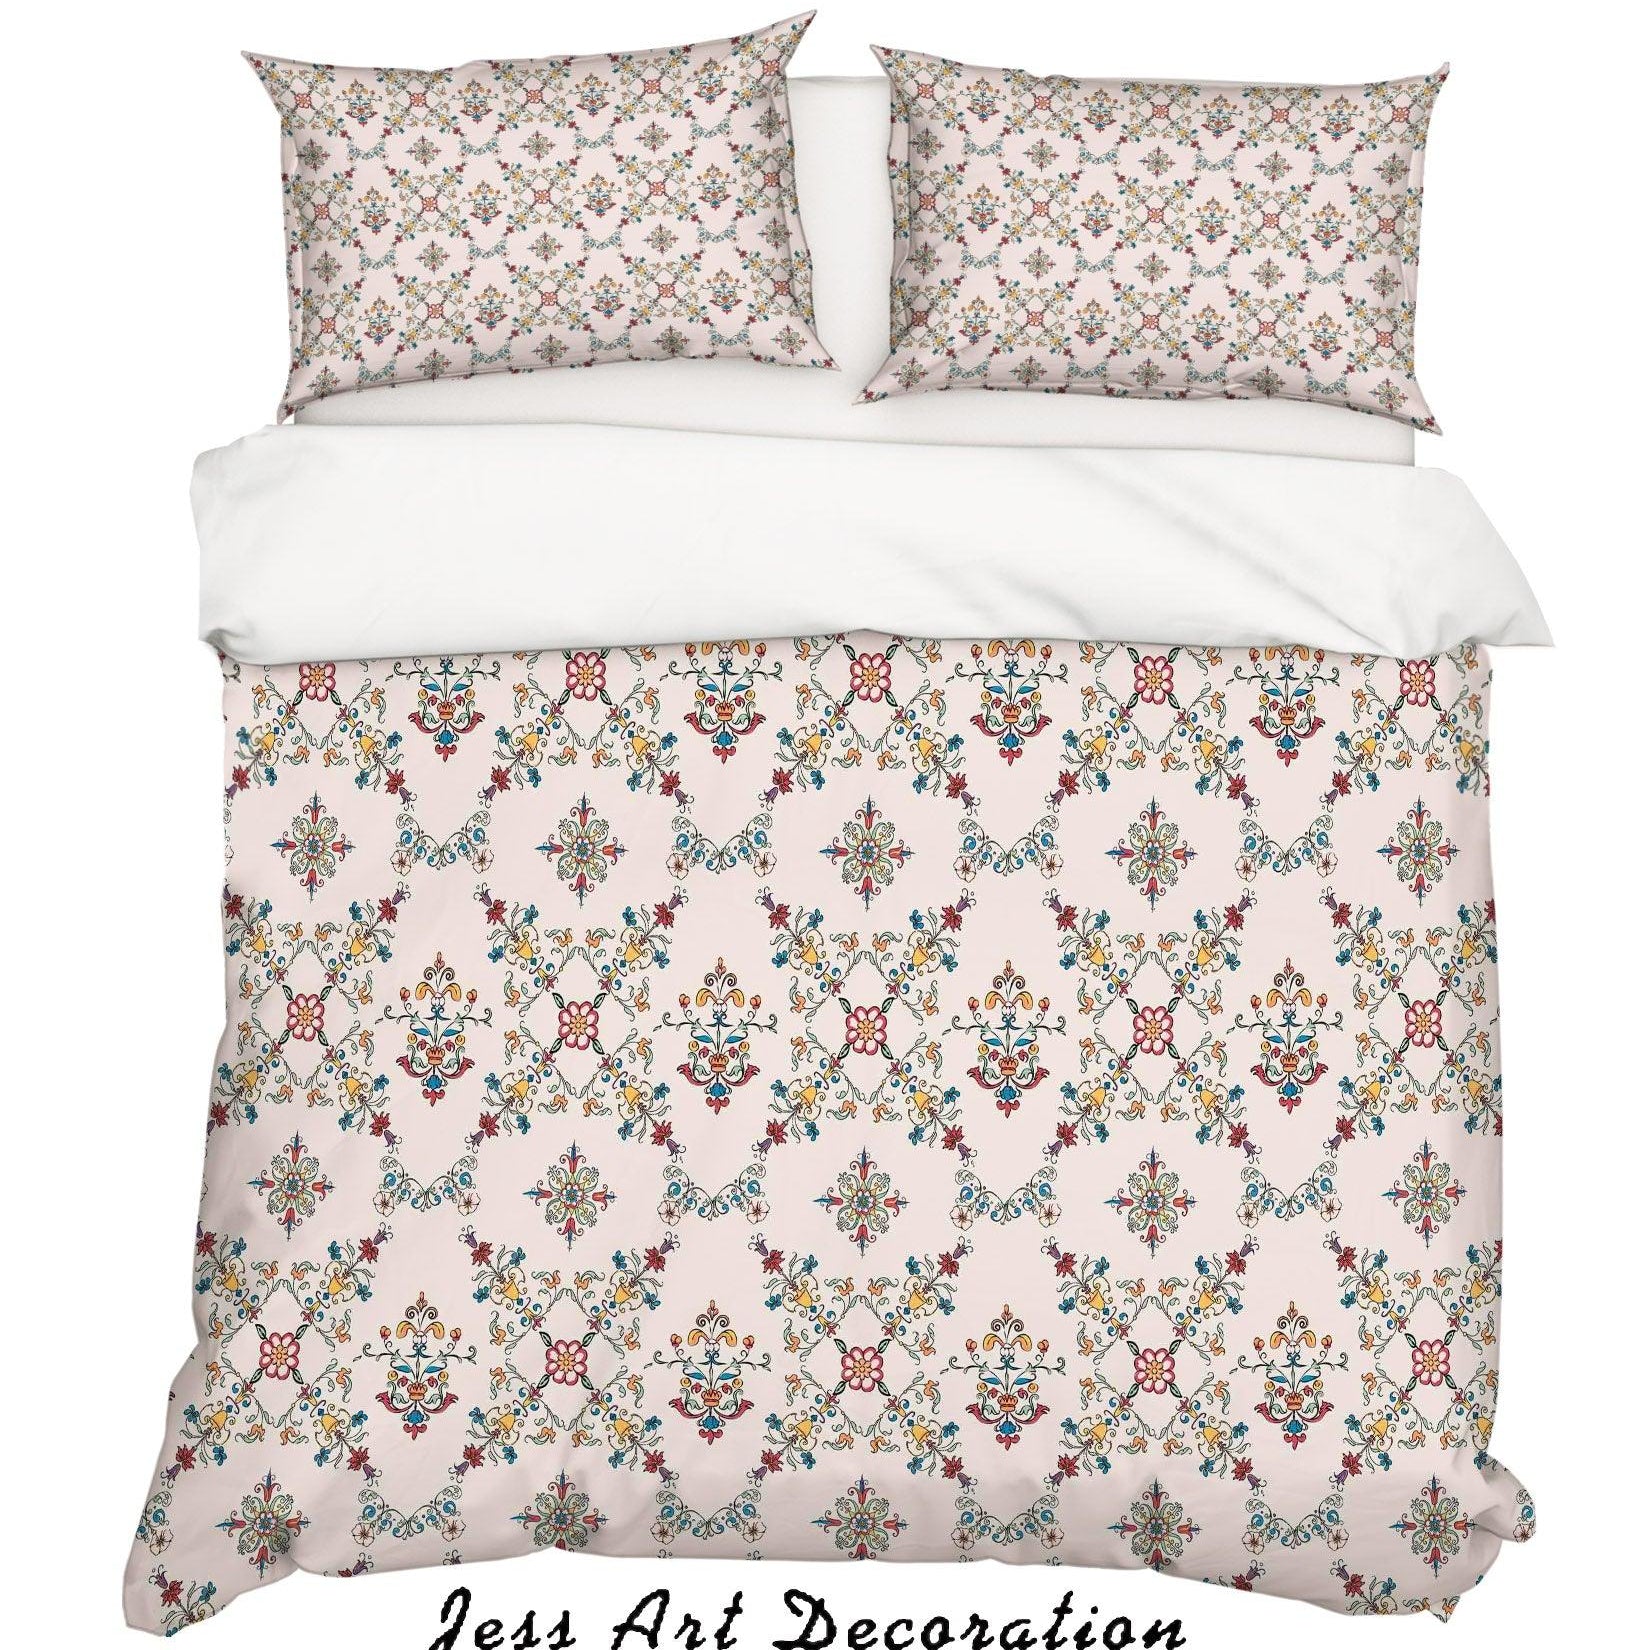 3D Vintage Geometry Floral Pattern Quilt Cover Set Bedding Set Duvet Cover Pillowcases WJ 6910- Jess Art Decoration